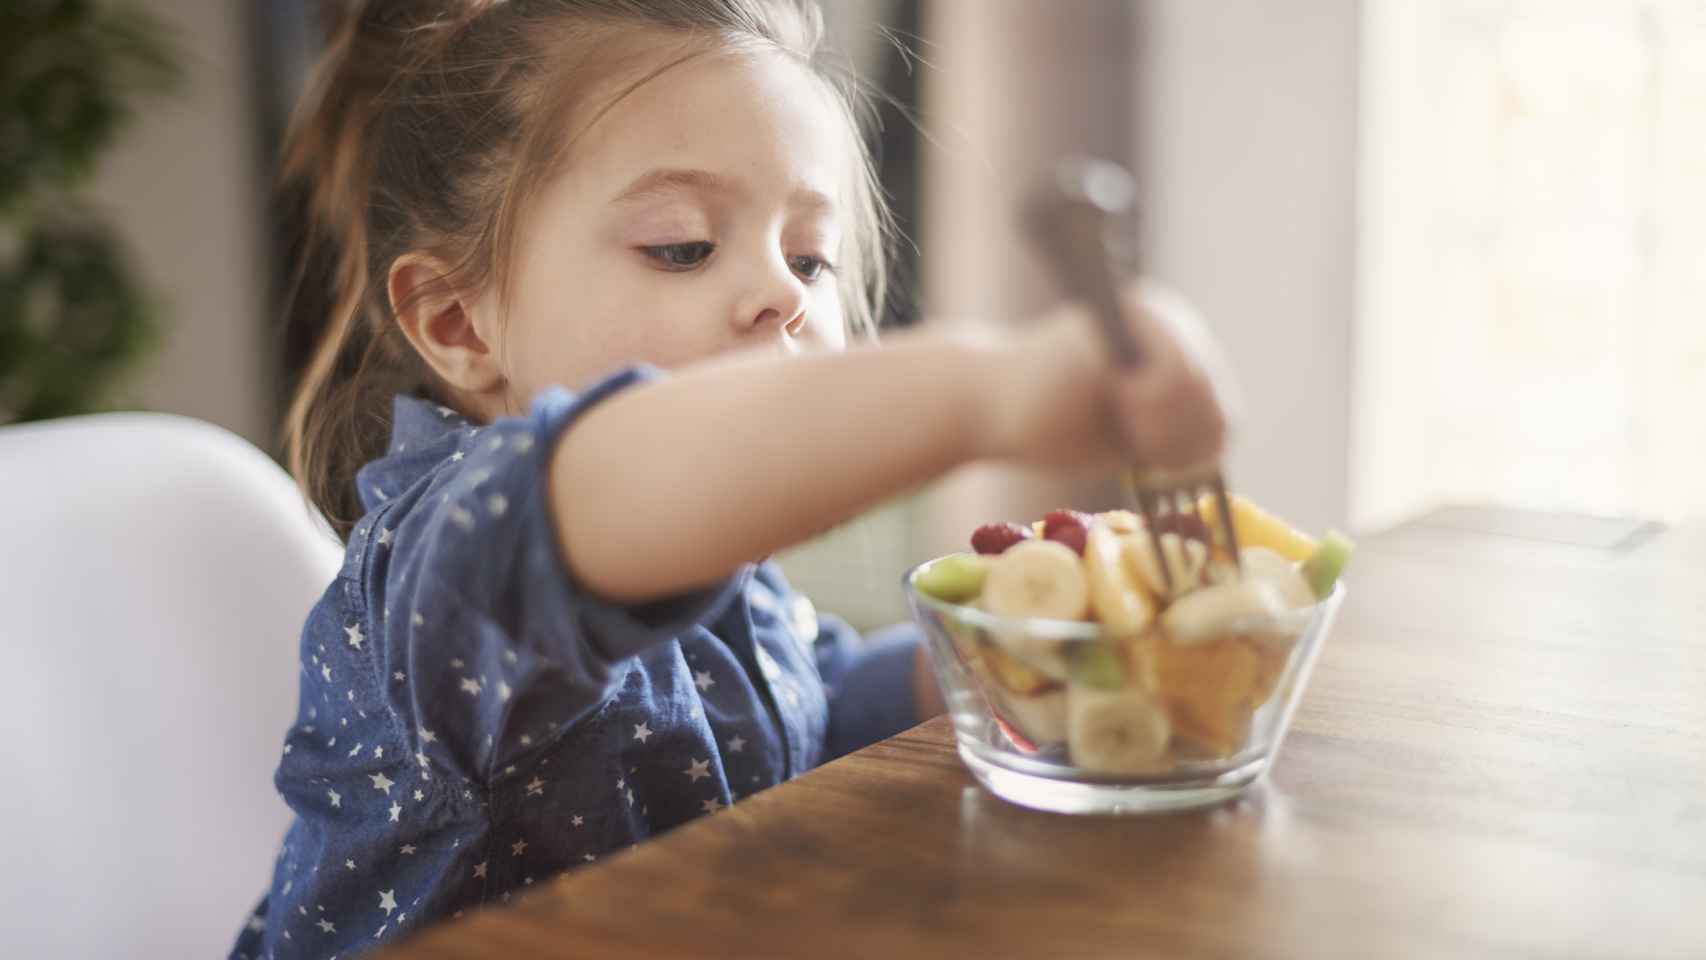 Presafalin promueve los hábitos saludables en la infancia.